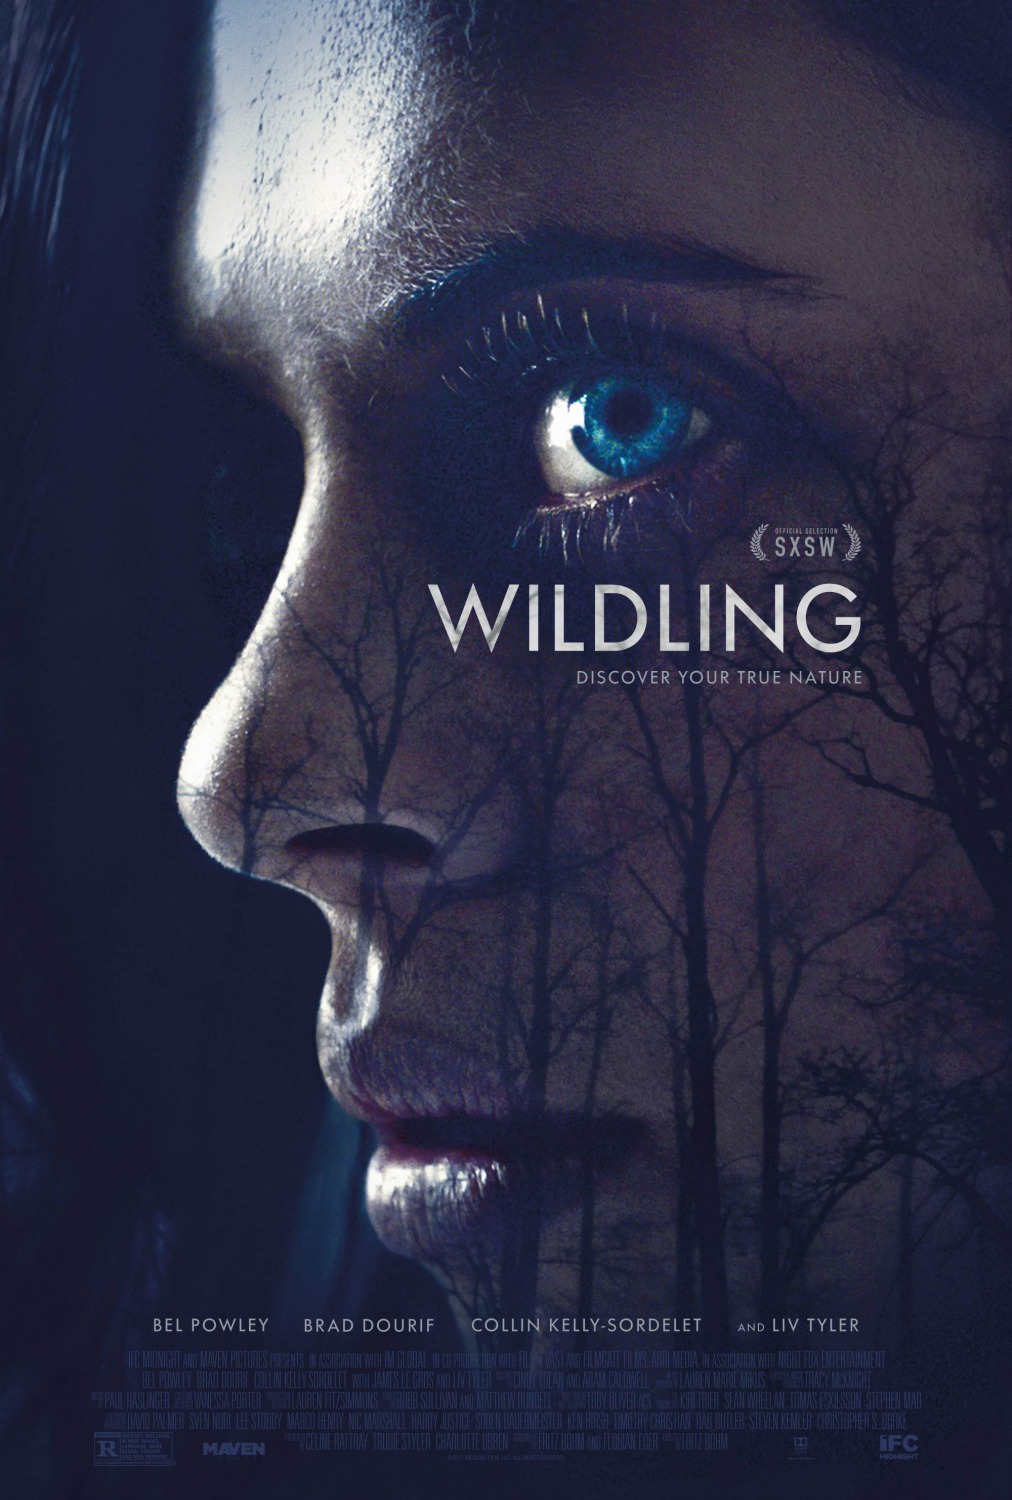 دانلود فیلم Wildling 2018